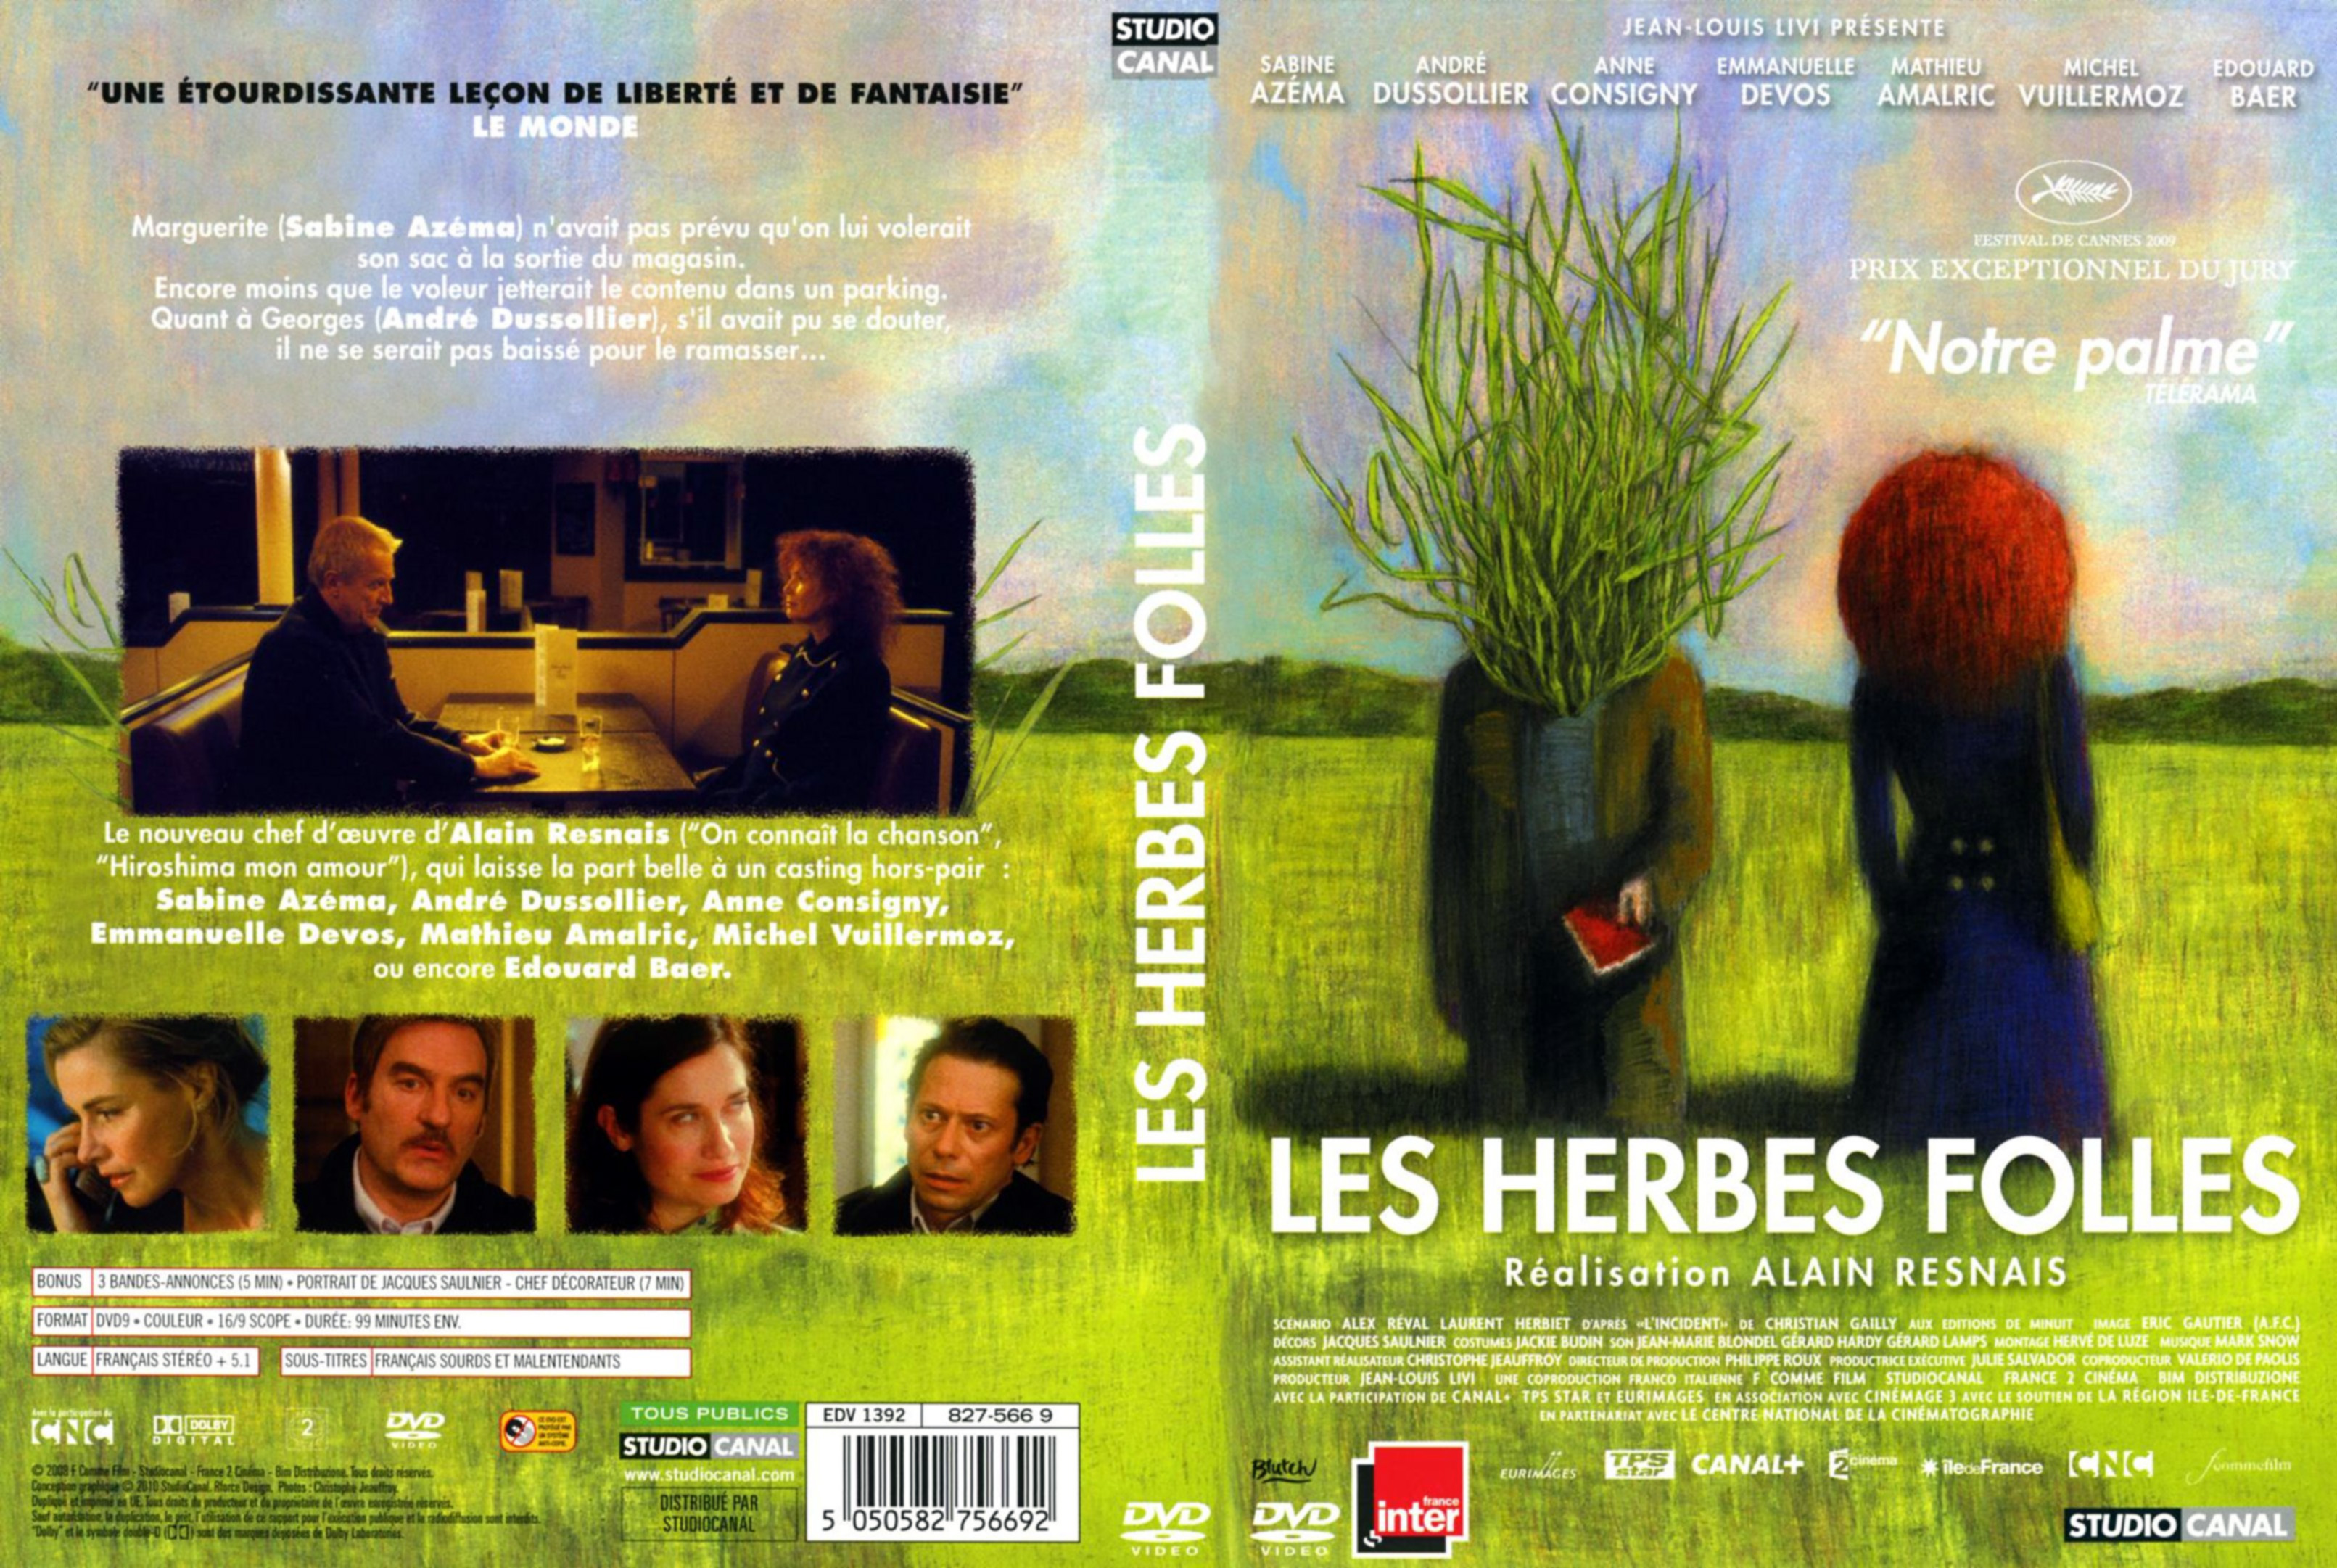 Jaquette DVD Les herbes folles